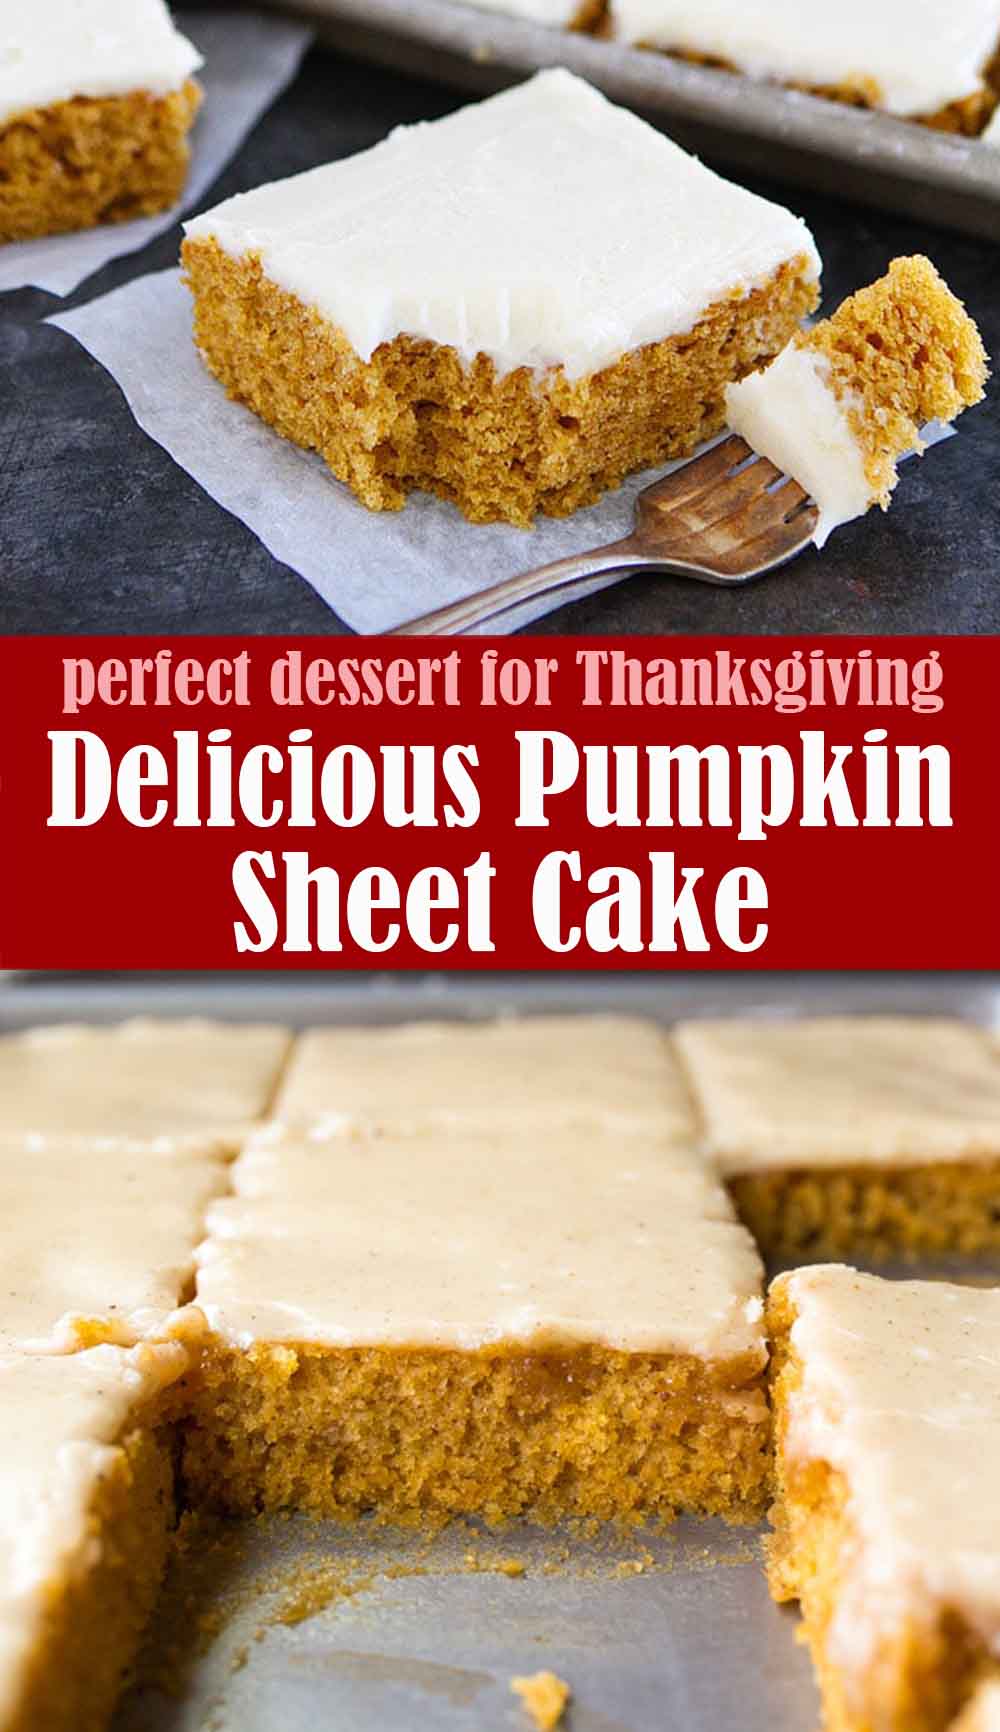 Delicious Pumpkin Sheet Cake